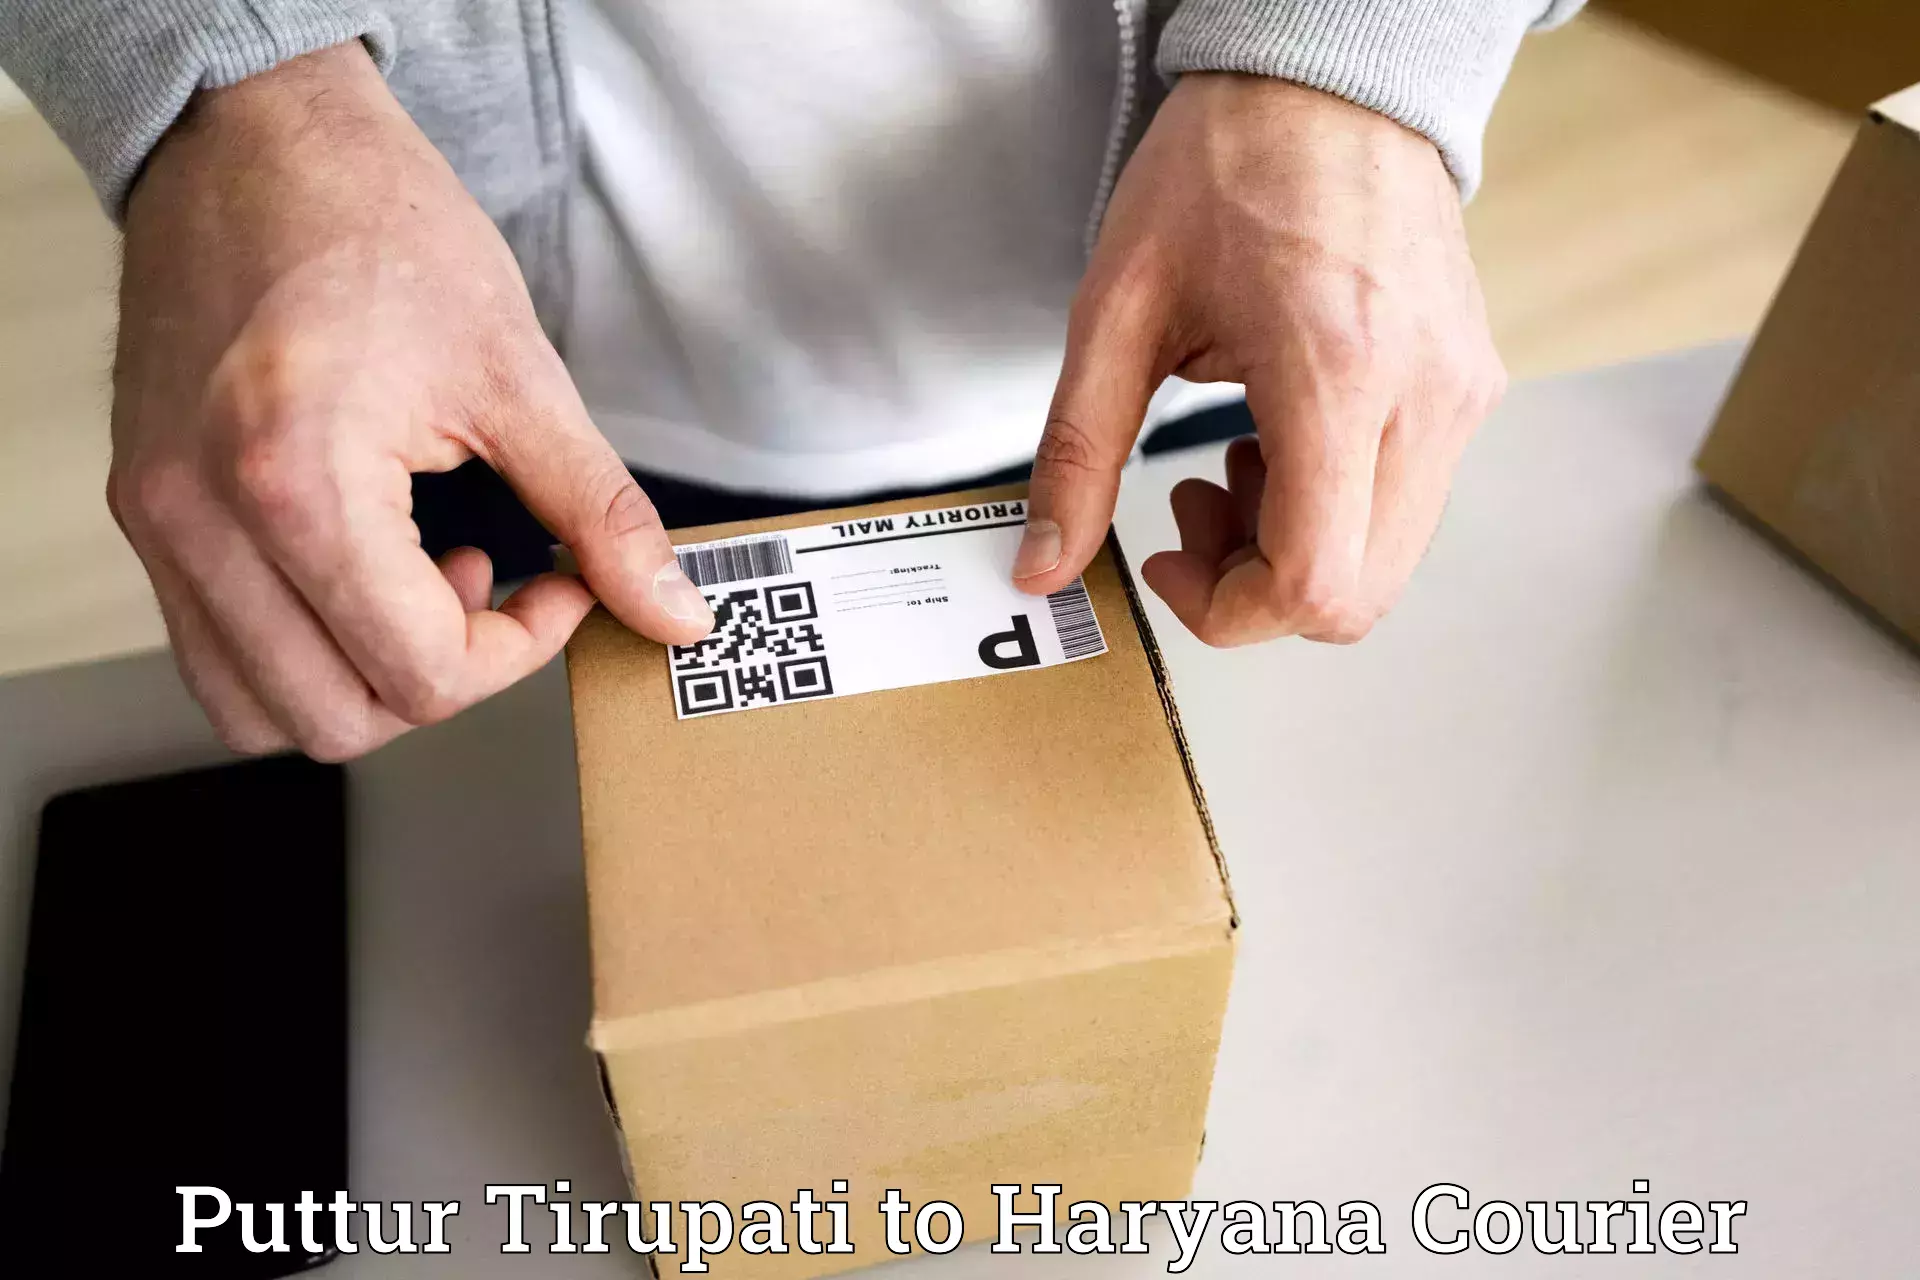 Courier service comparison Puttur Tirupati to Mahendragarh